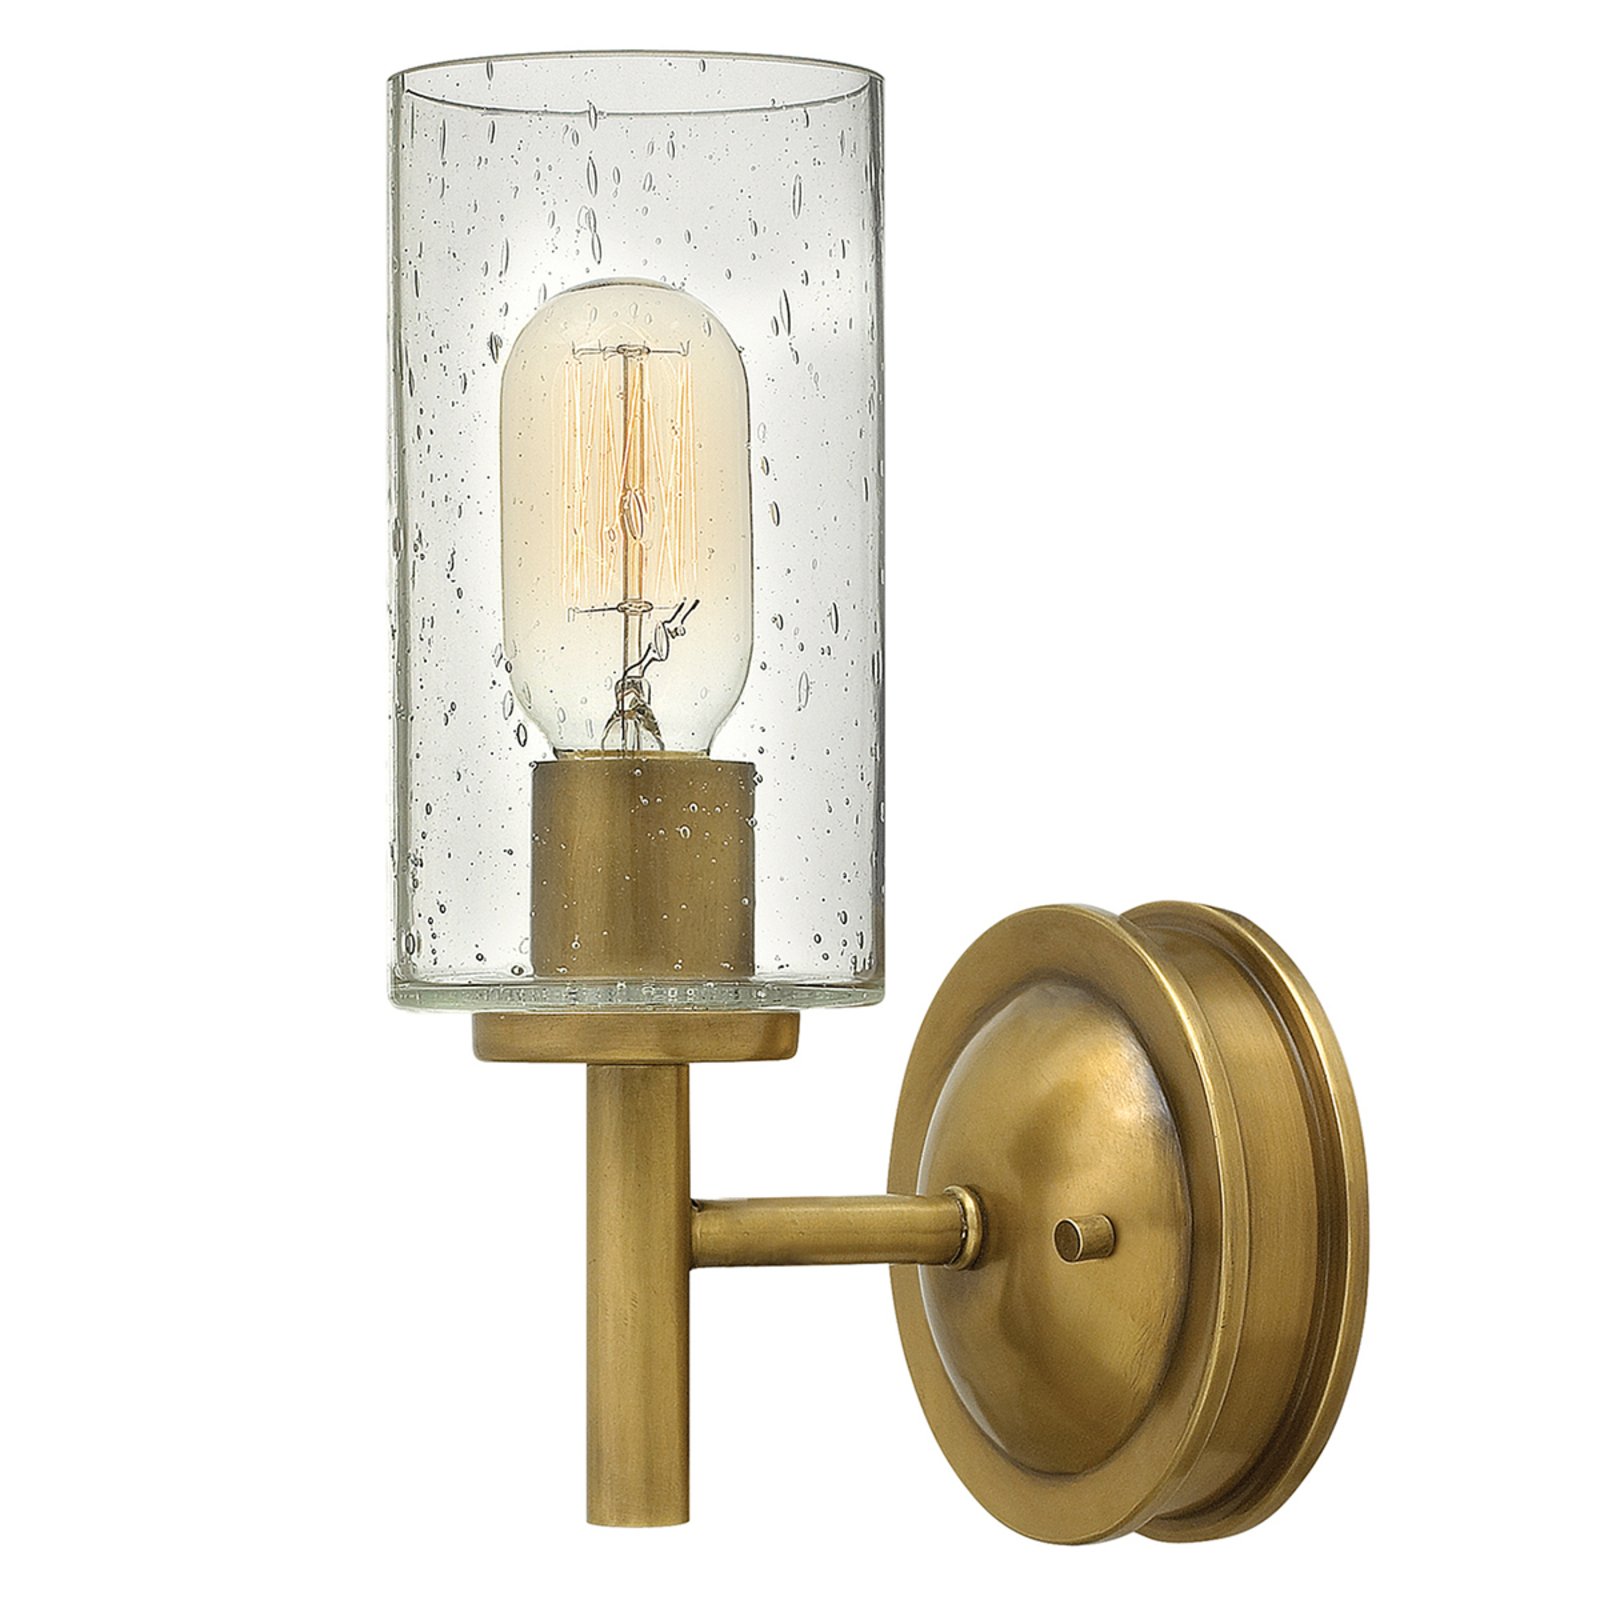 Collier - stijlvolle wandlamp met antieke look